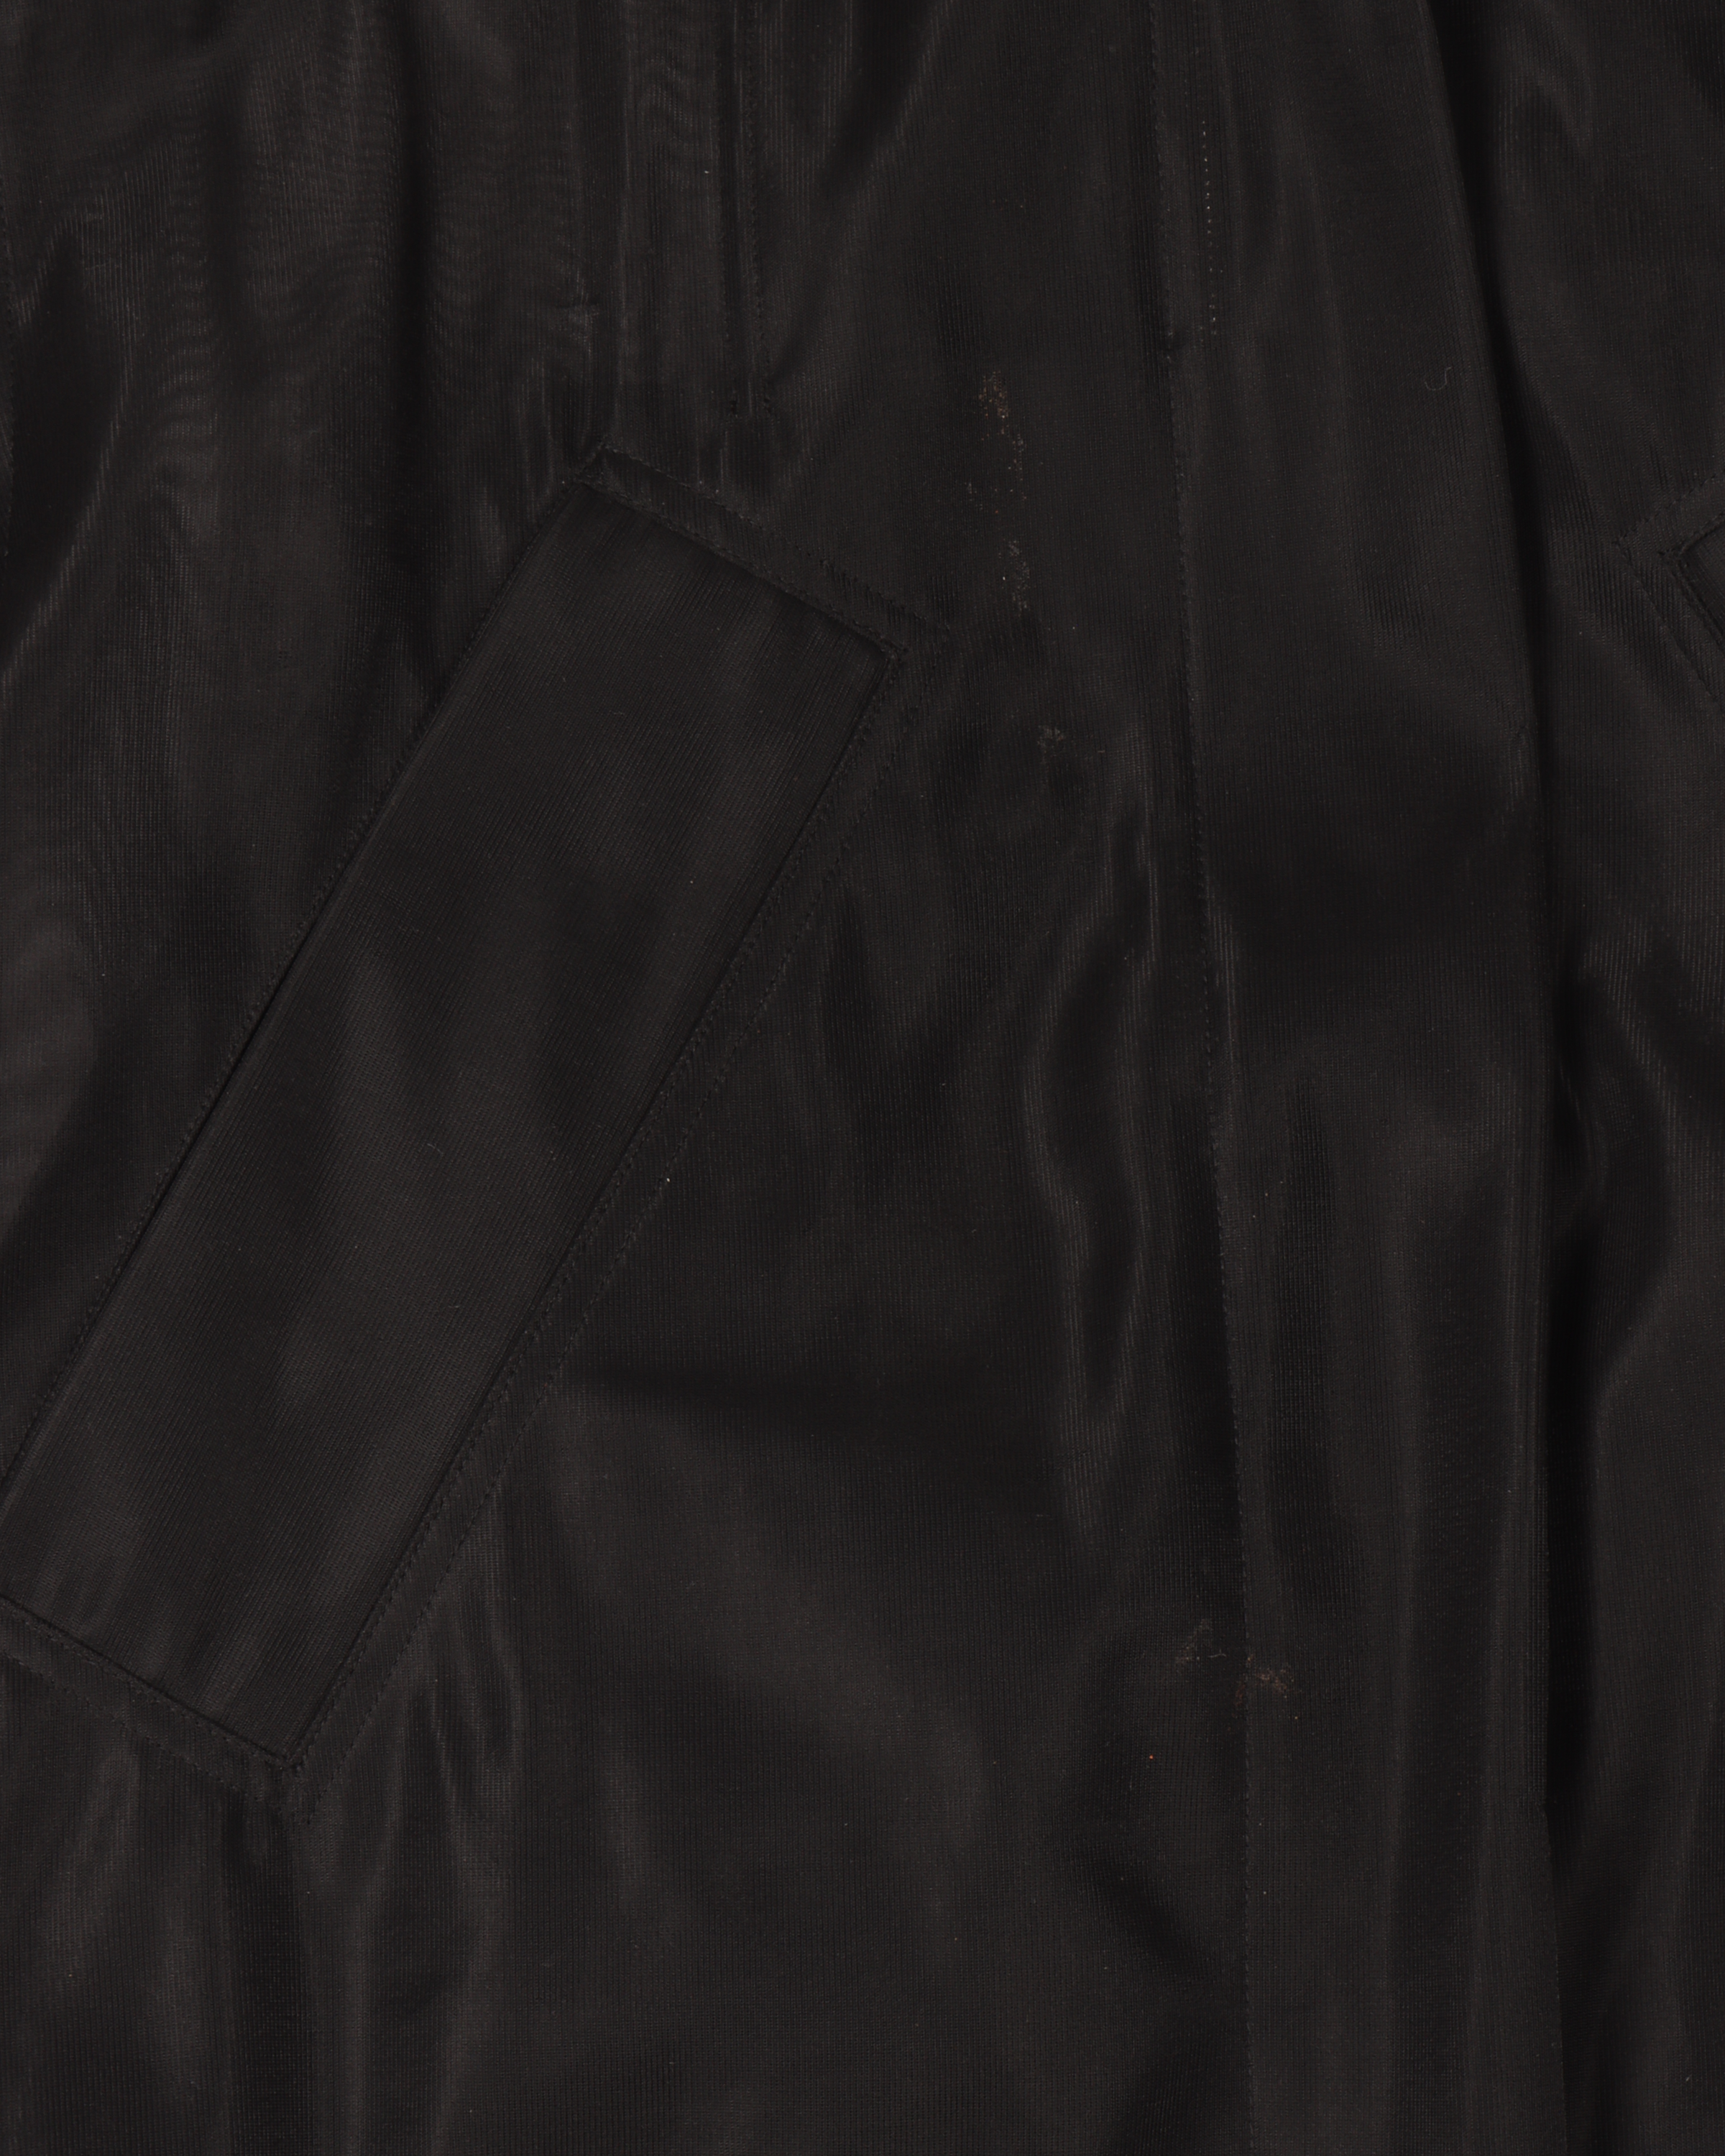 Transparent Fishtail Jacket